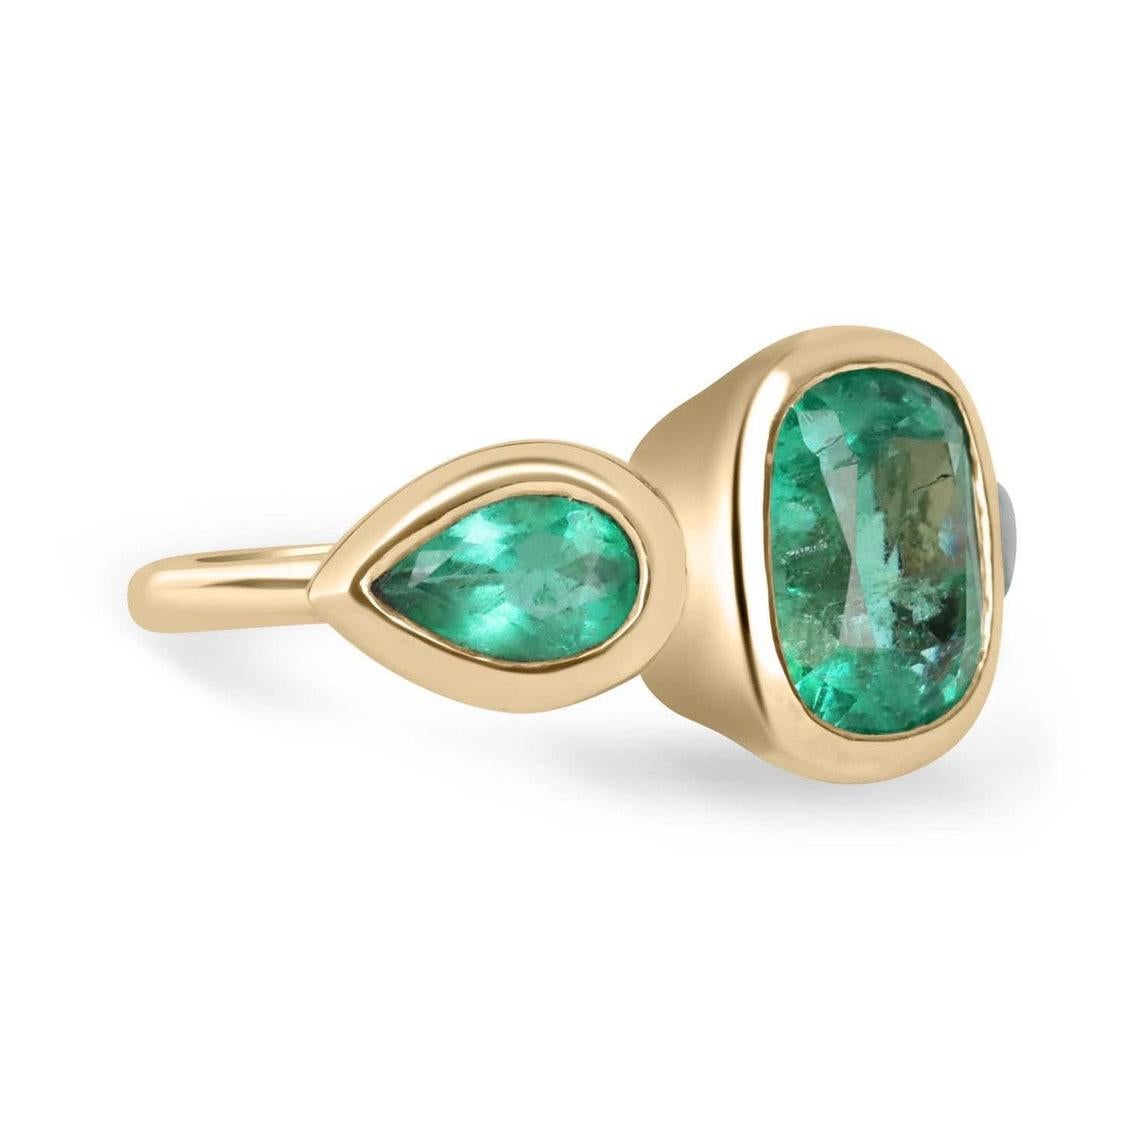 Werfen Sie einen Blick auf diesen atemberaubenden Ring mit drei Smaragden und Steinen. Der Mittelstein ist ein wunderschöner kolumbianischer Smaragd von 2,90 Karat in Form eines Kissens. Dieser Hauptstein wird auf beiden Seiten von Smaragden im